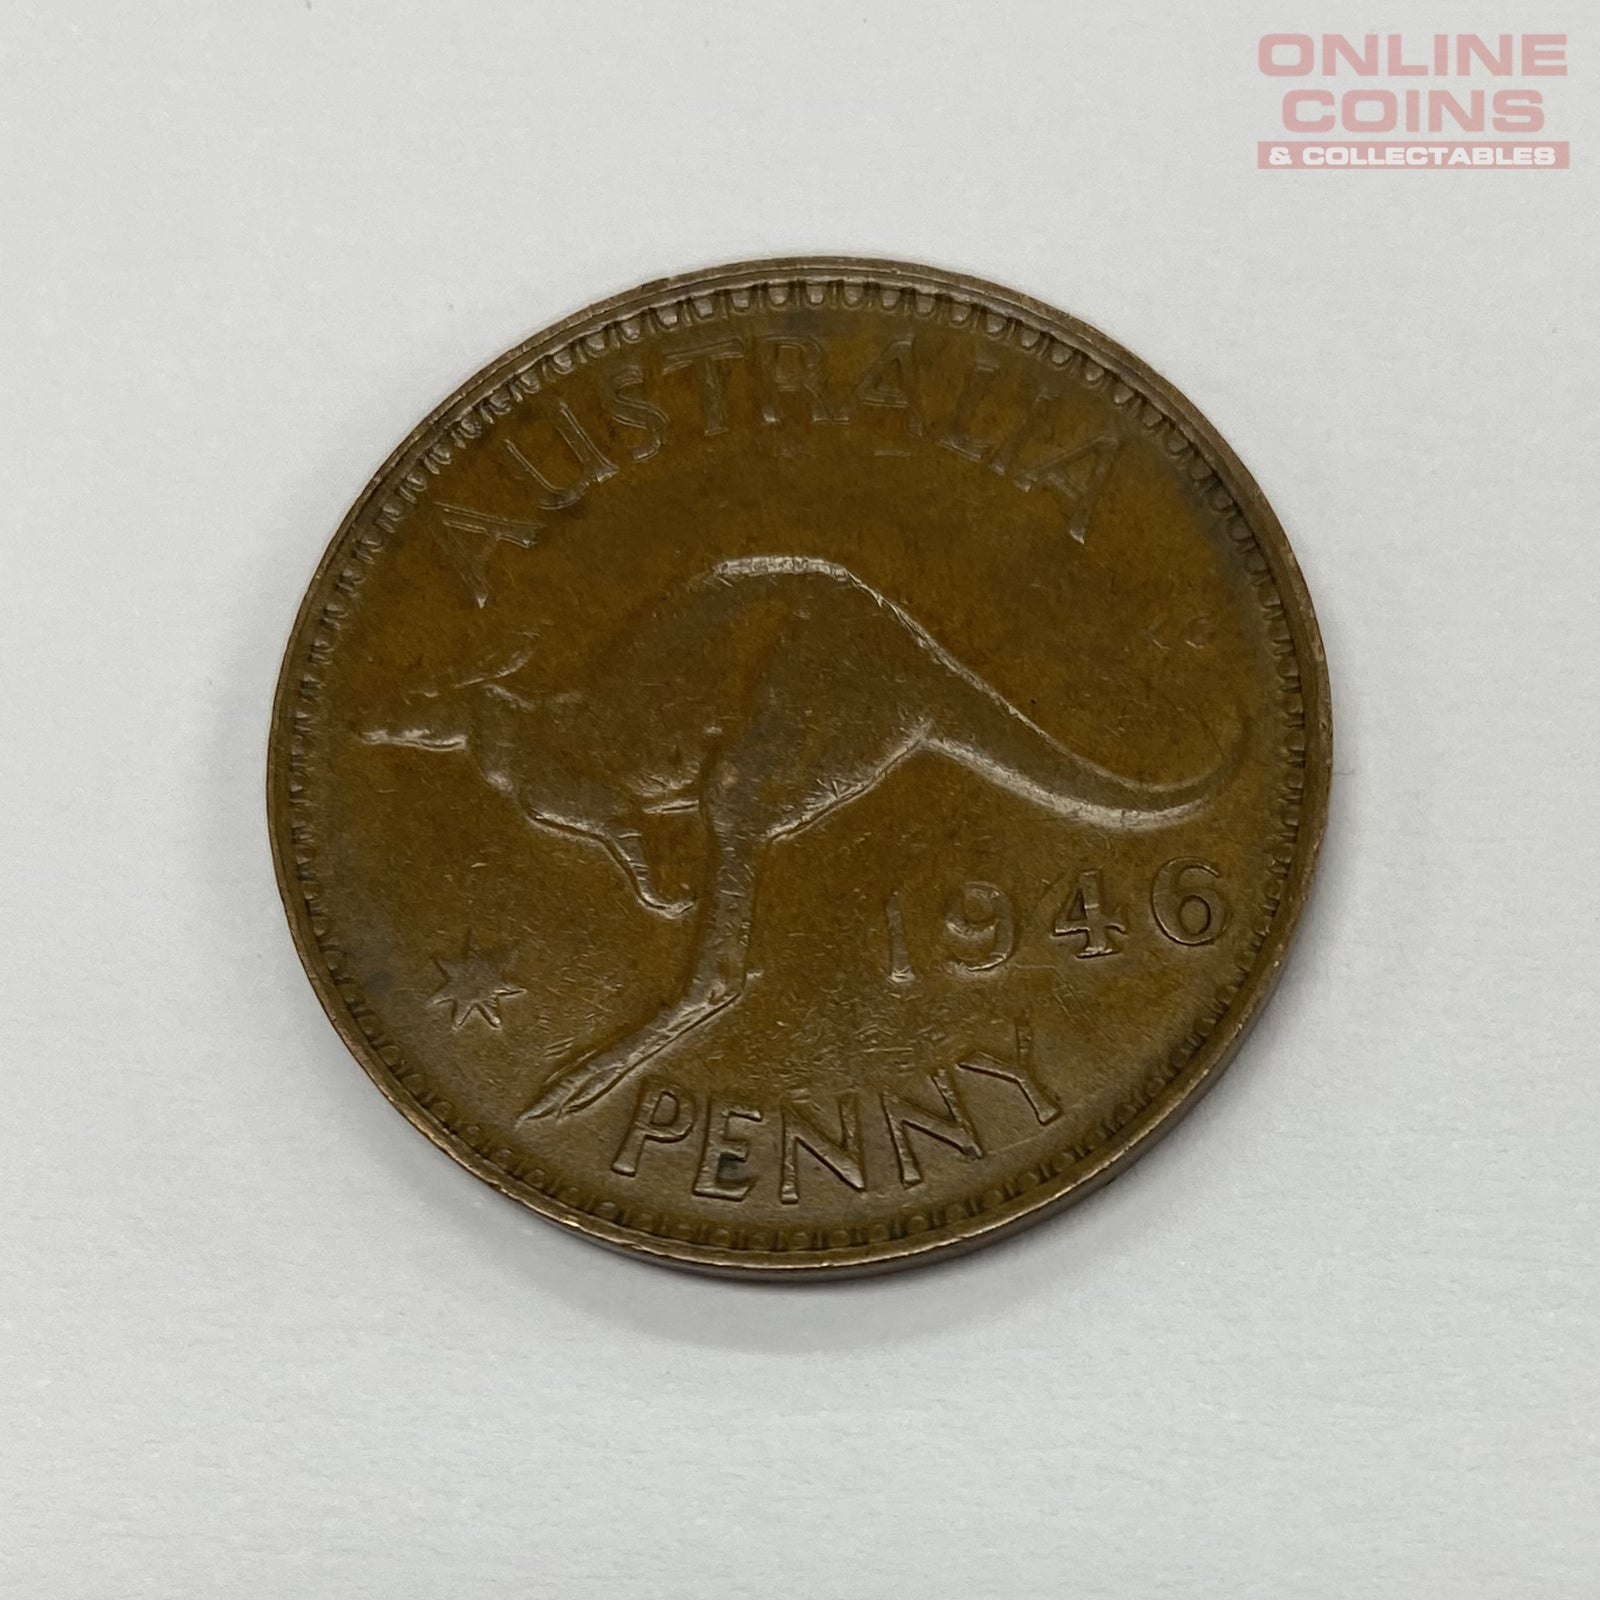 1946 Australian Penny - Graded Fine